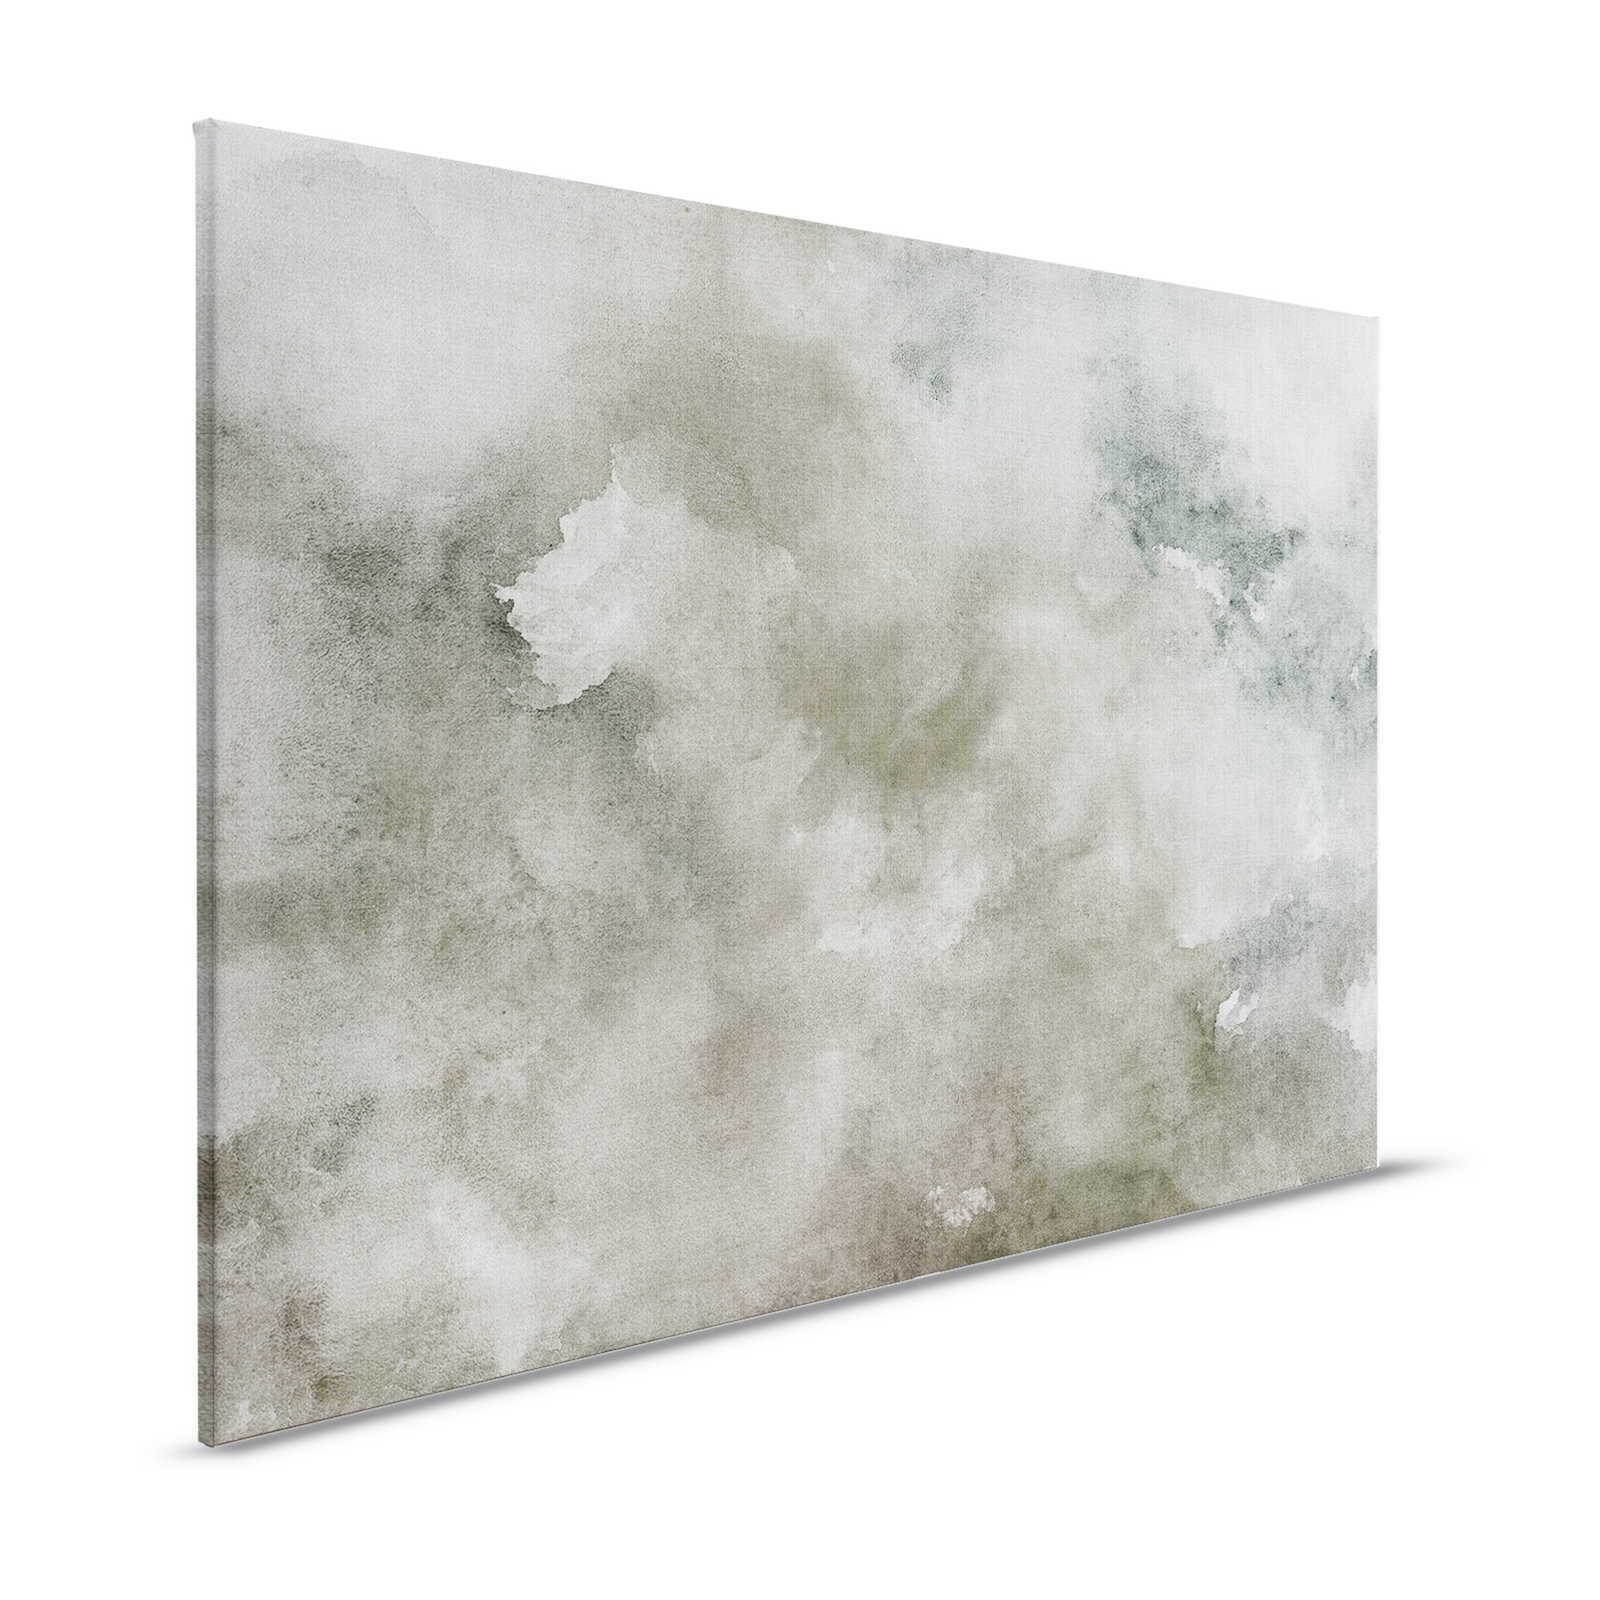 Acuarelas 1 - Pintura sobre lienzo en acuarela gris con aspecto de lino natural - 1,20 m x 0,80 m
